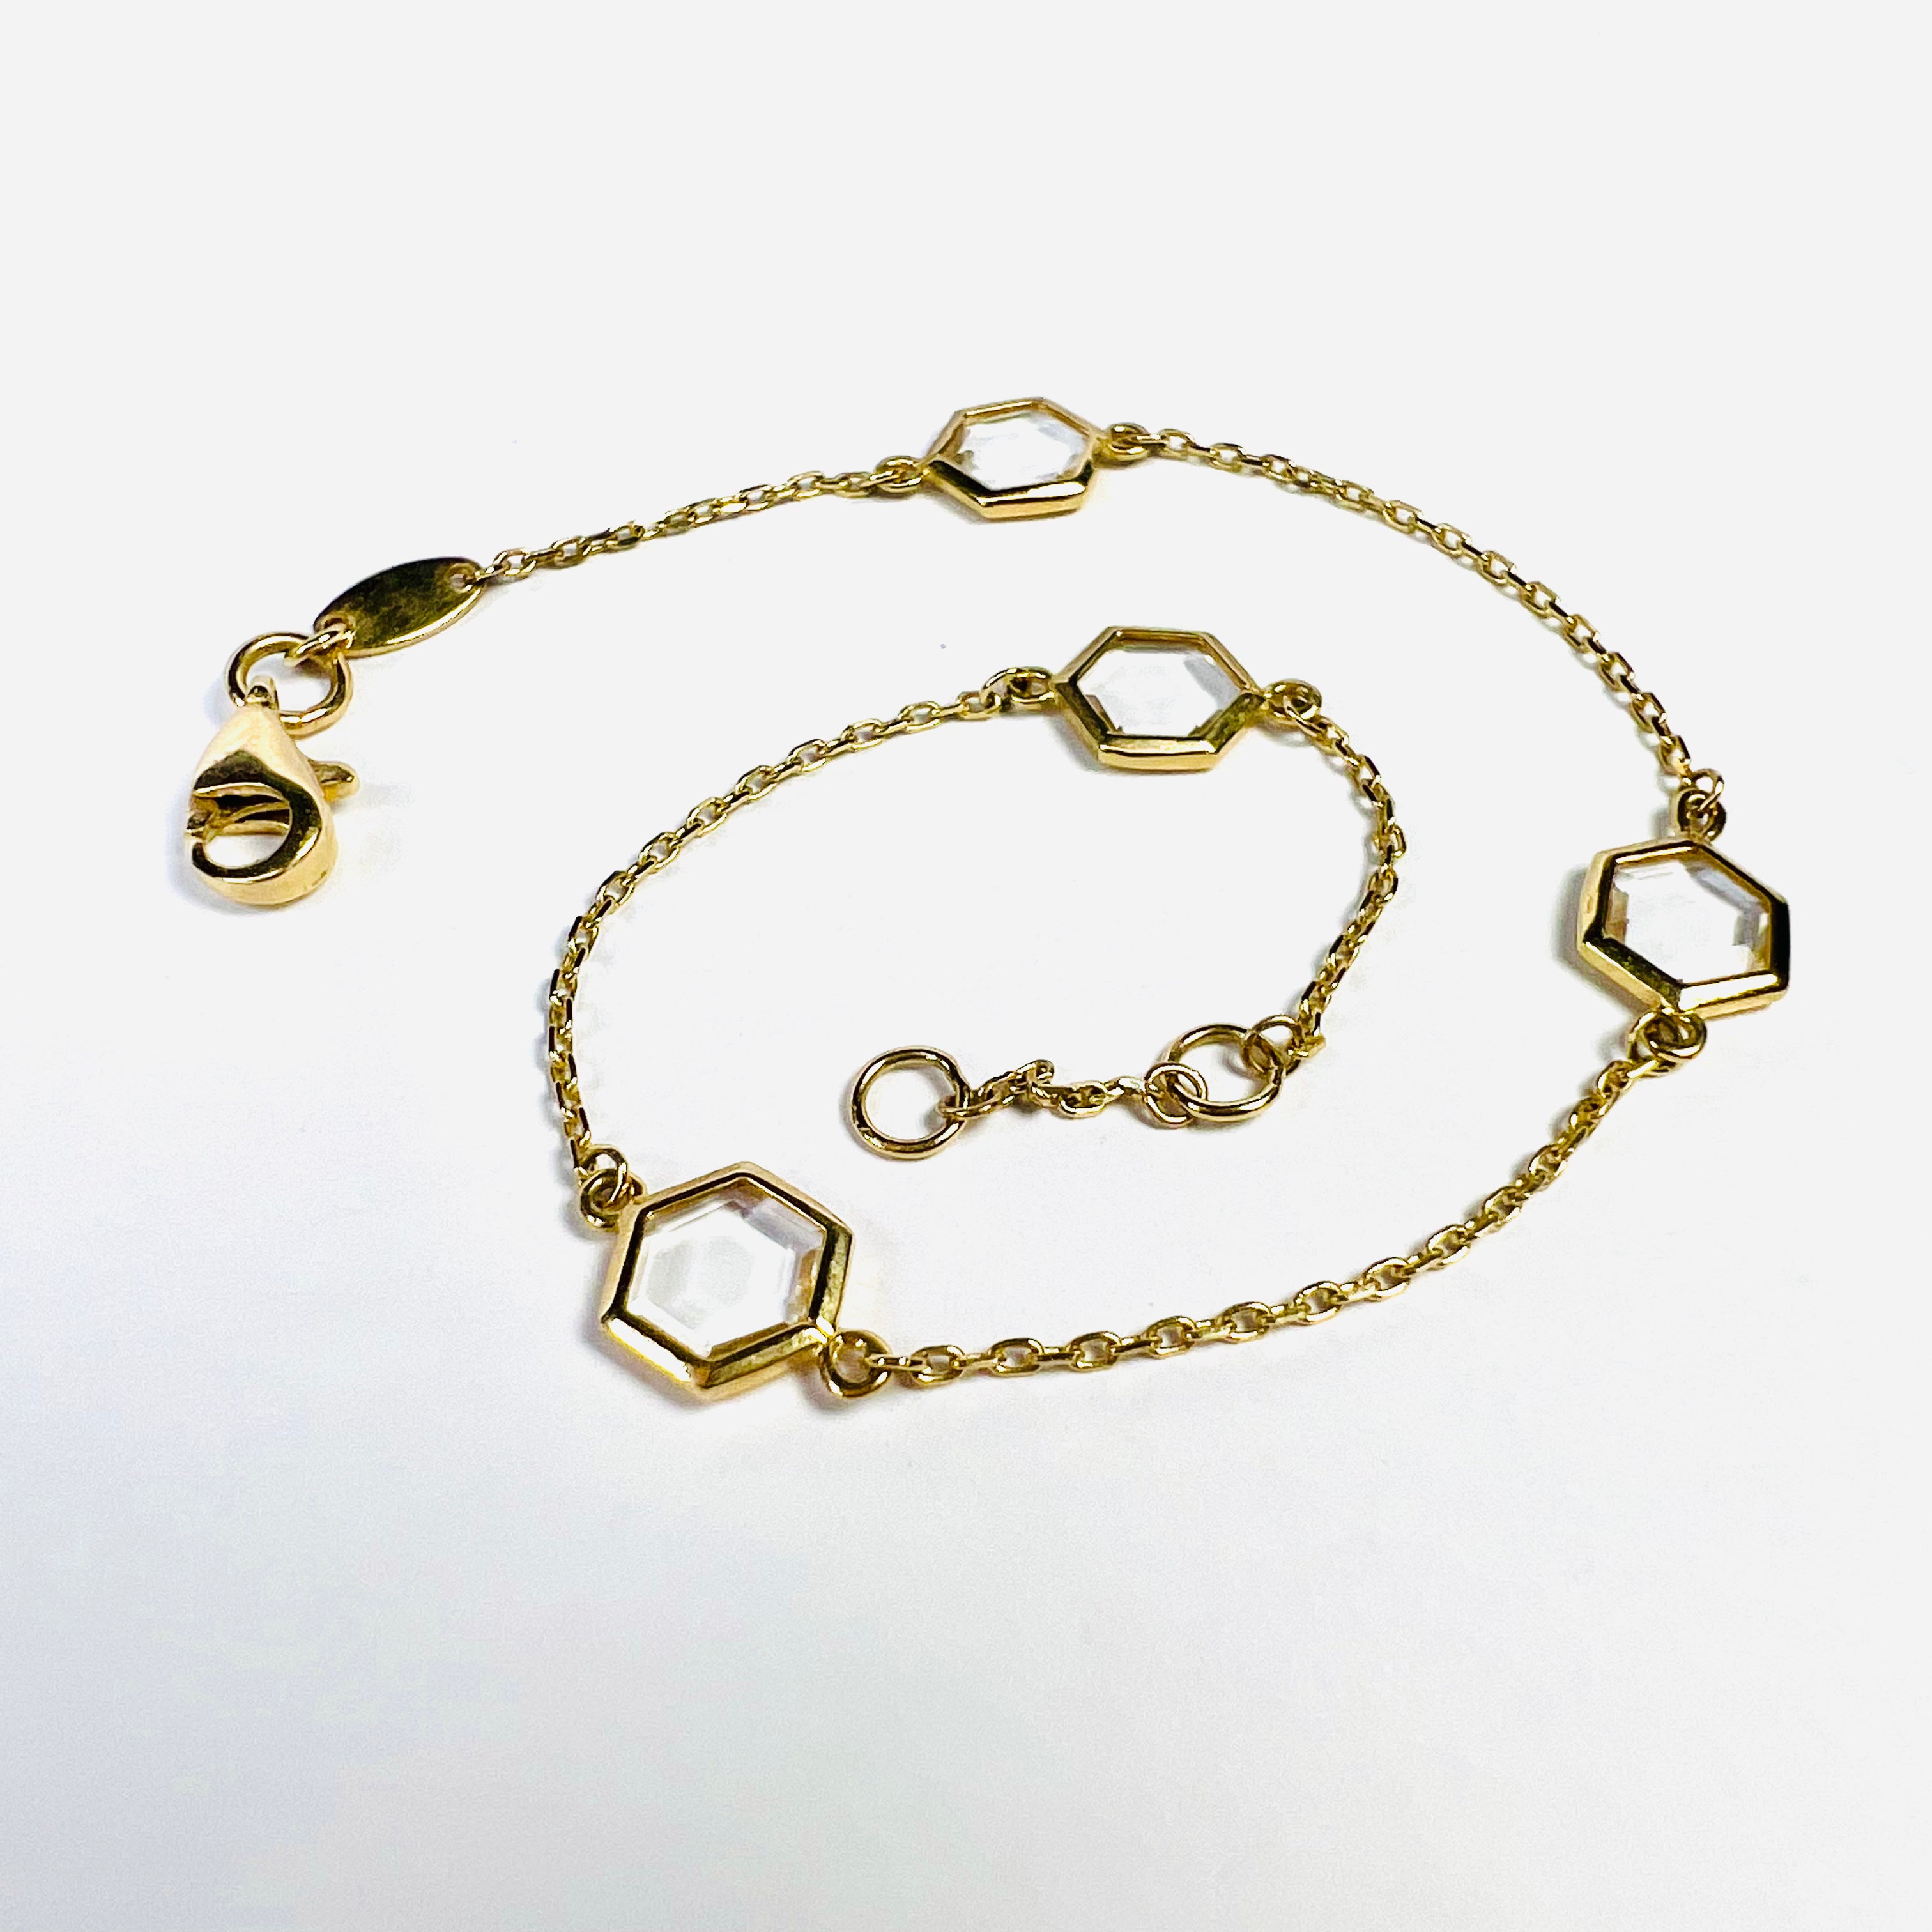 Solid 14K Yellow Gold Hexagon Quartz Cable Chain Bracelet 7.5"